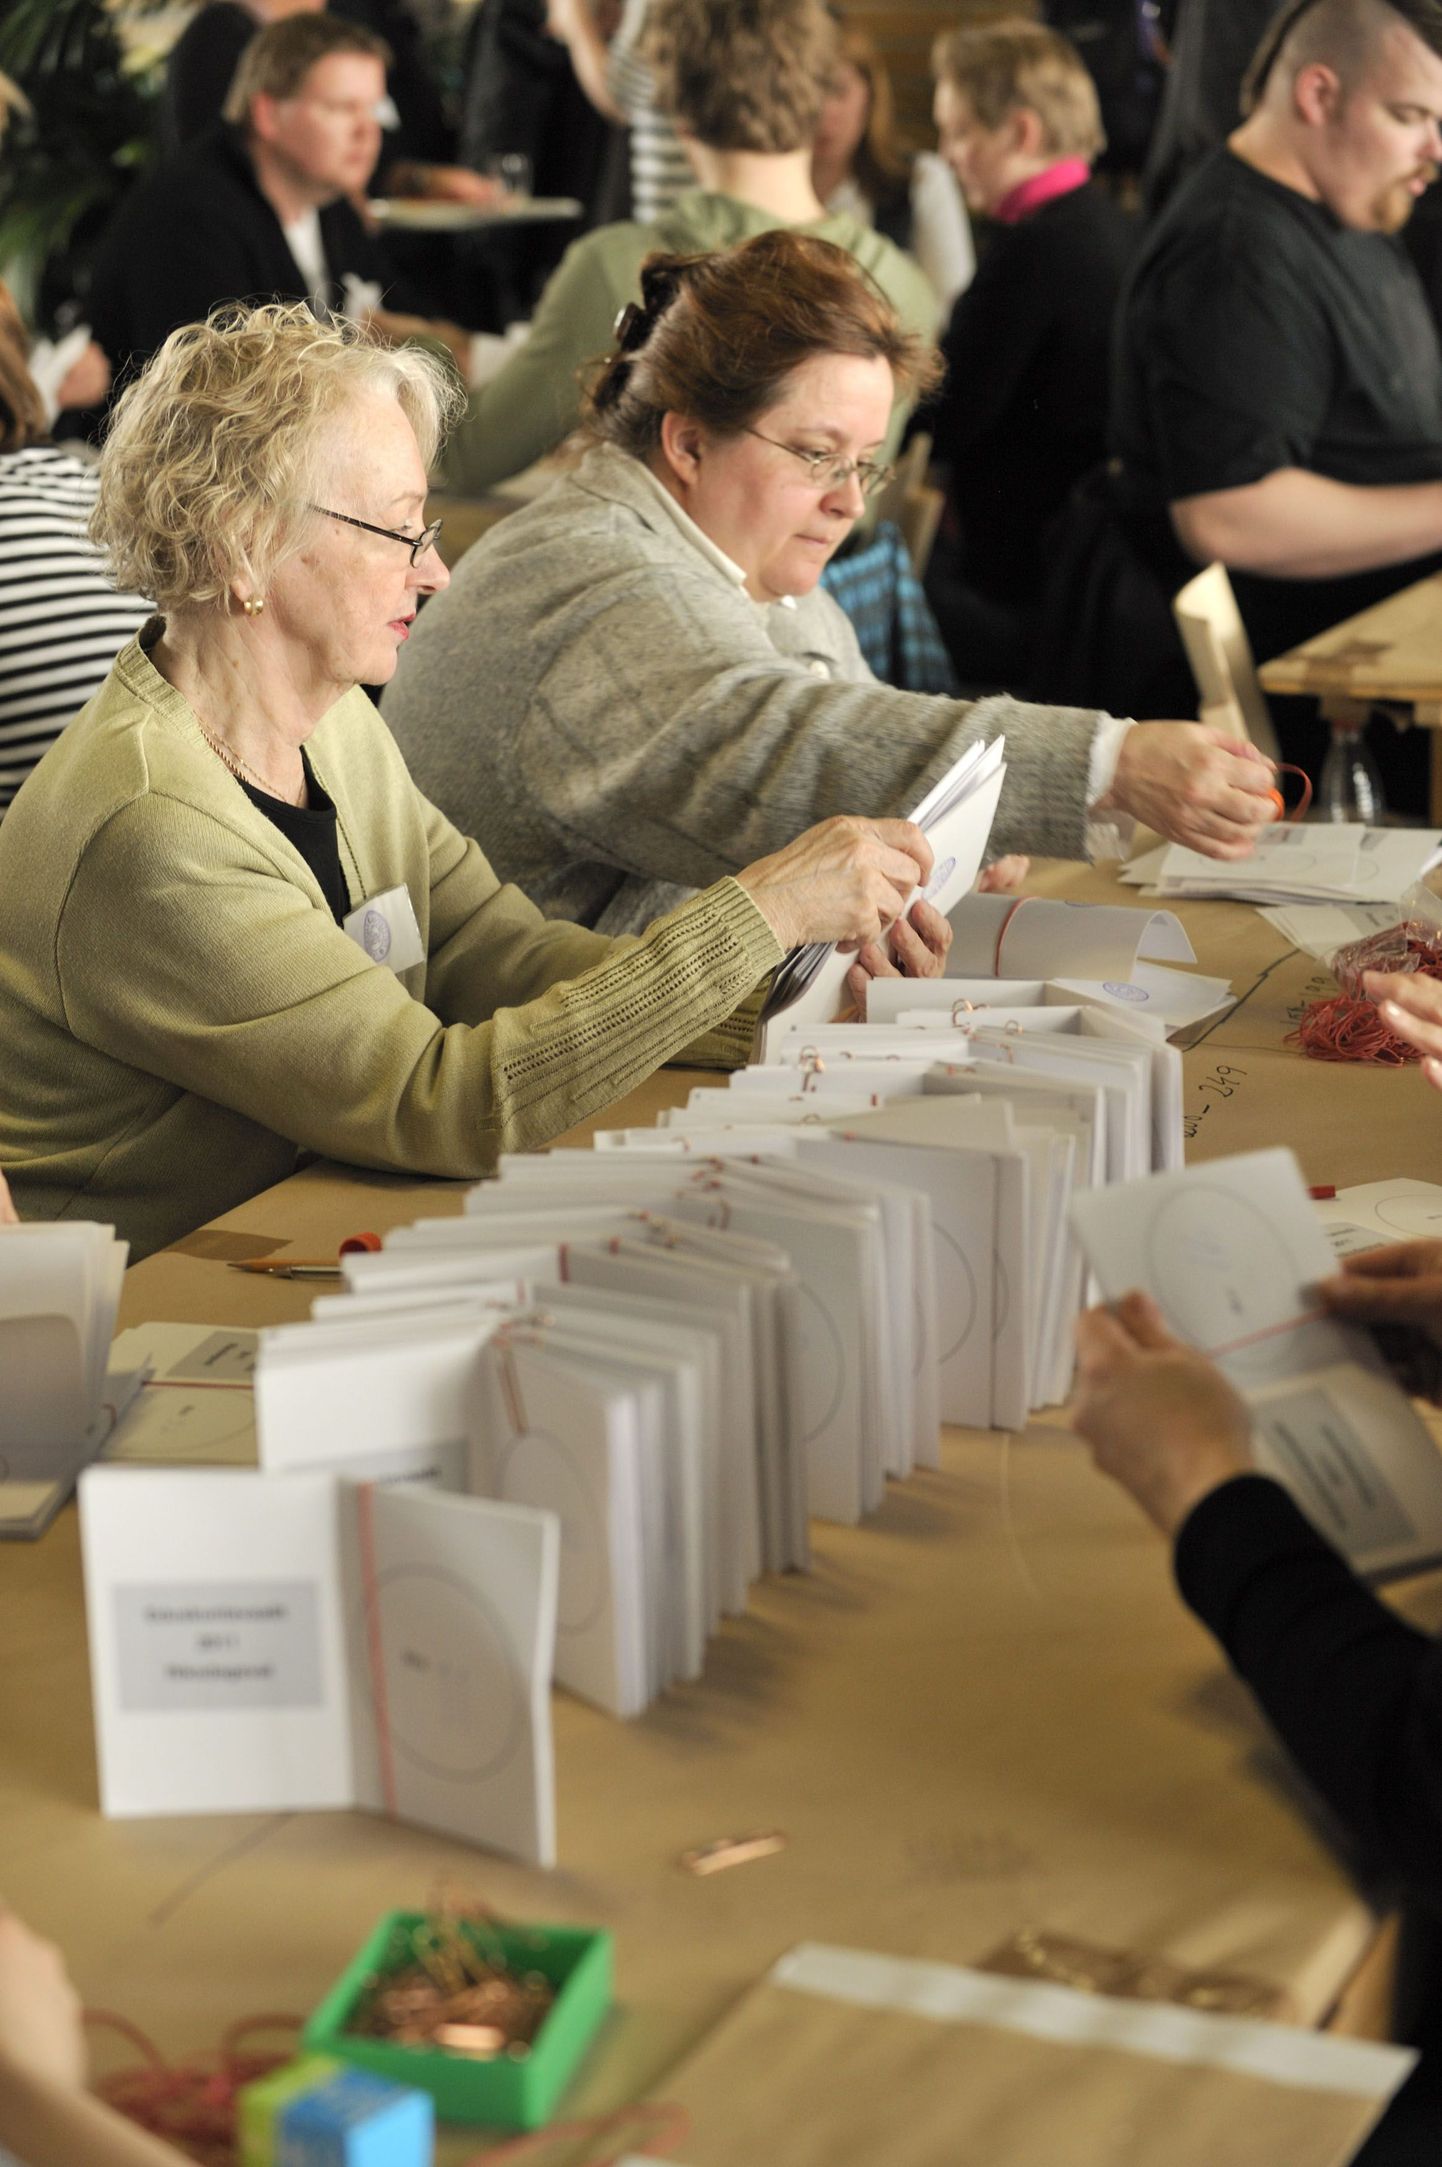 Soome ametnikud kontrollivad hääletussedeleid. Parlamendivalimised toimusid 17. aprillil.